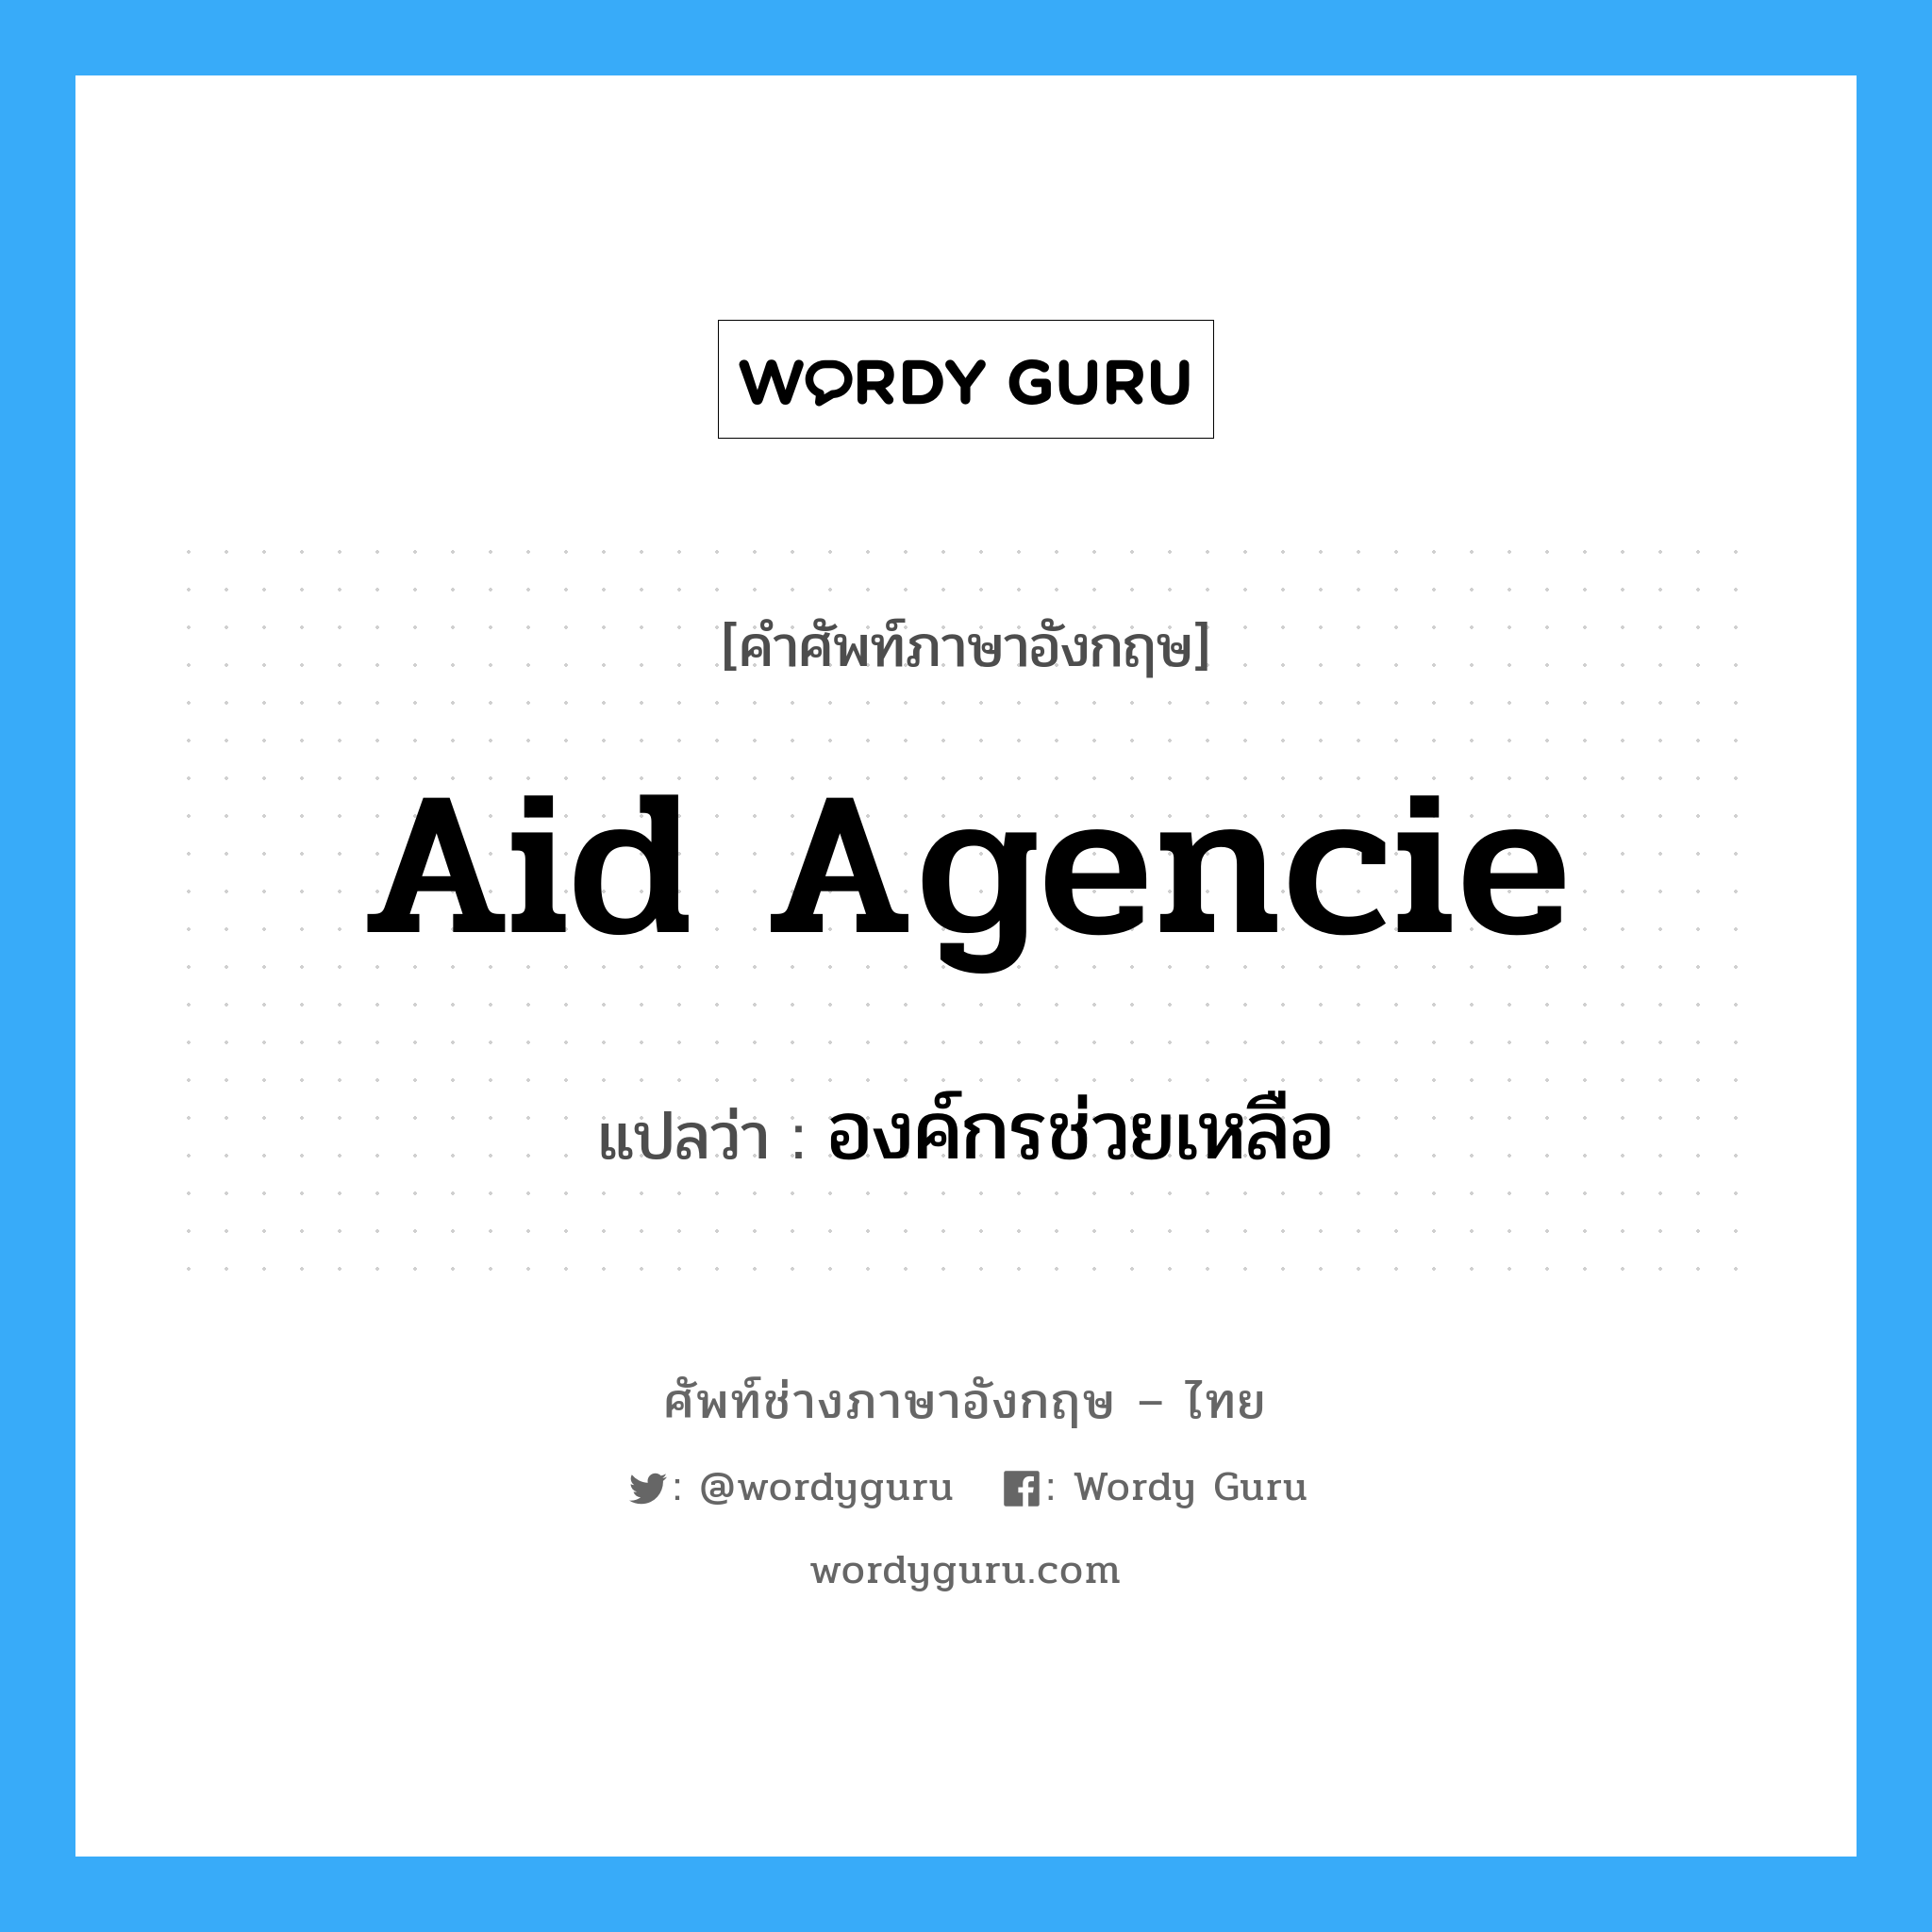 องค์กรช่วยเหลือ ภาษาอังกฤษ?, คำศัพท์ช่างภาษาอังกฤษ - ไทย องค์กรช่วยเหลือ คำศัพท์ภาษาอังกฤษ องค์กรช่วยเหลือ แปลว่า Aid Agencie